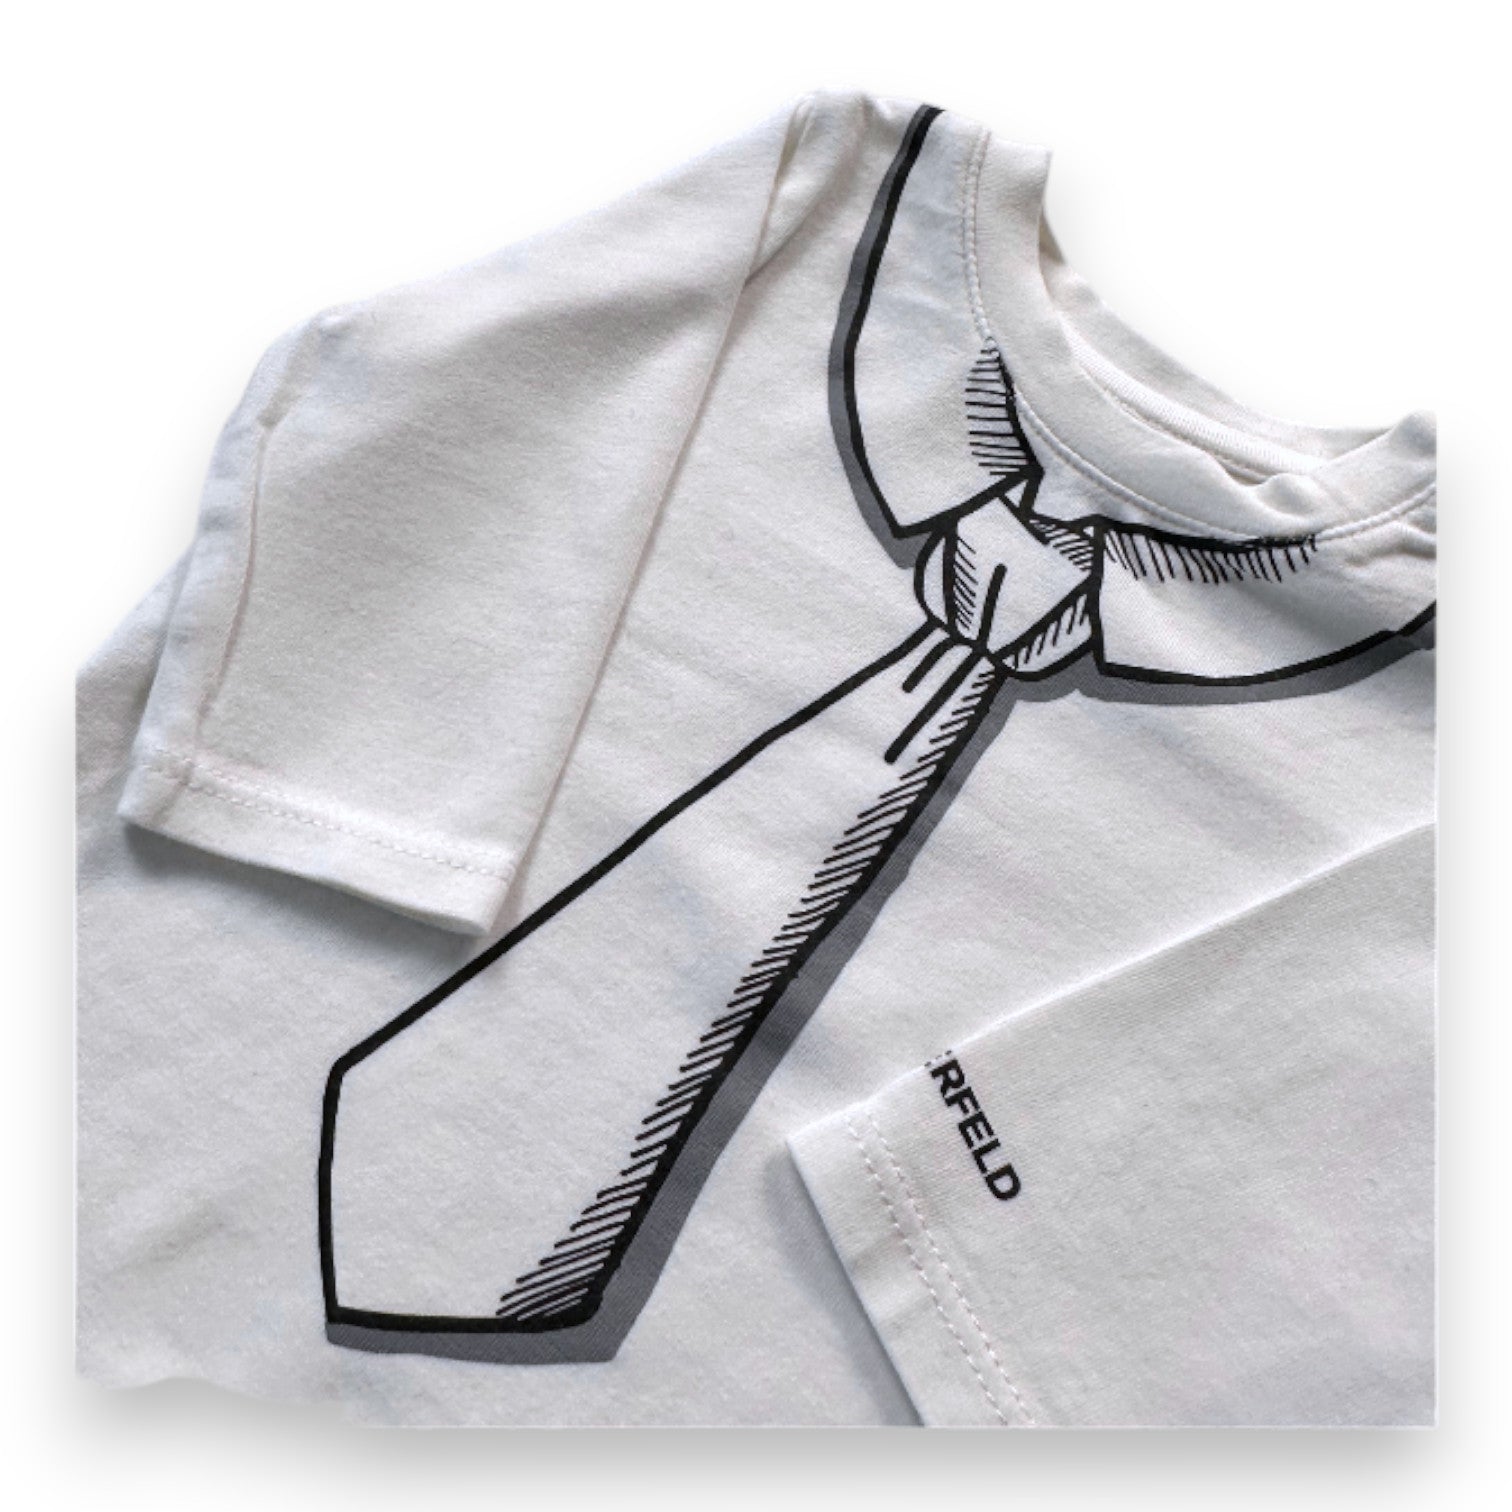 KARL LAGERFELD - T-shirt à manches longues blanc avec imprimé cravate - 1 mois